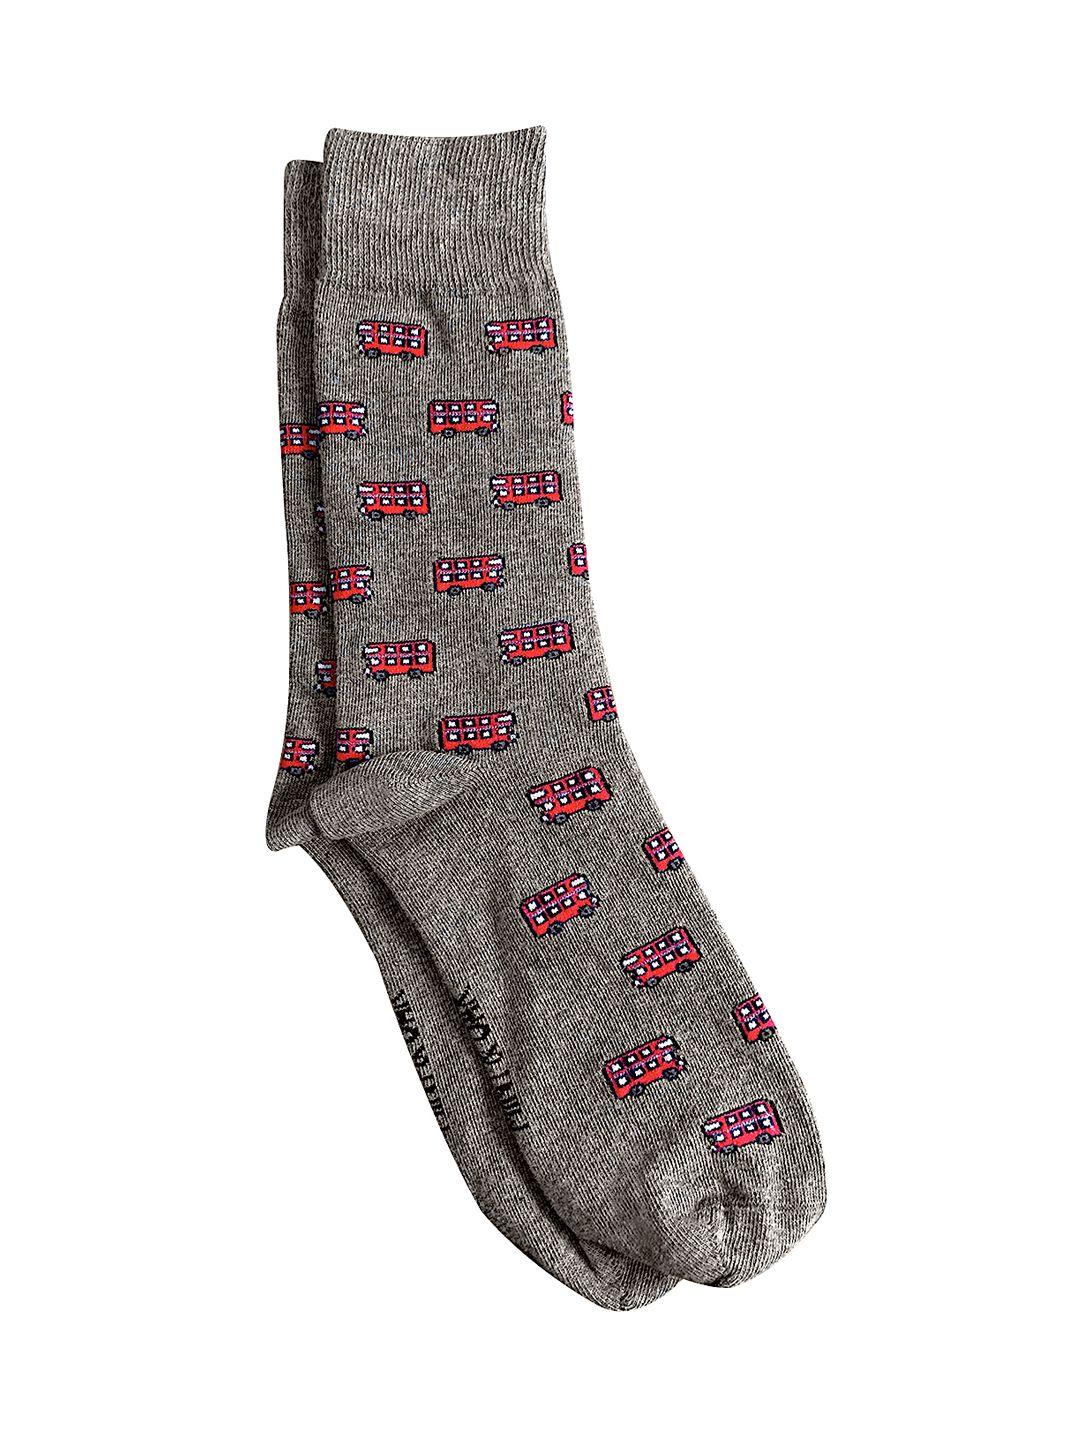 mint & oak men grey & red double decker bus patterned calf-length socks